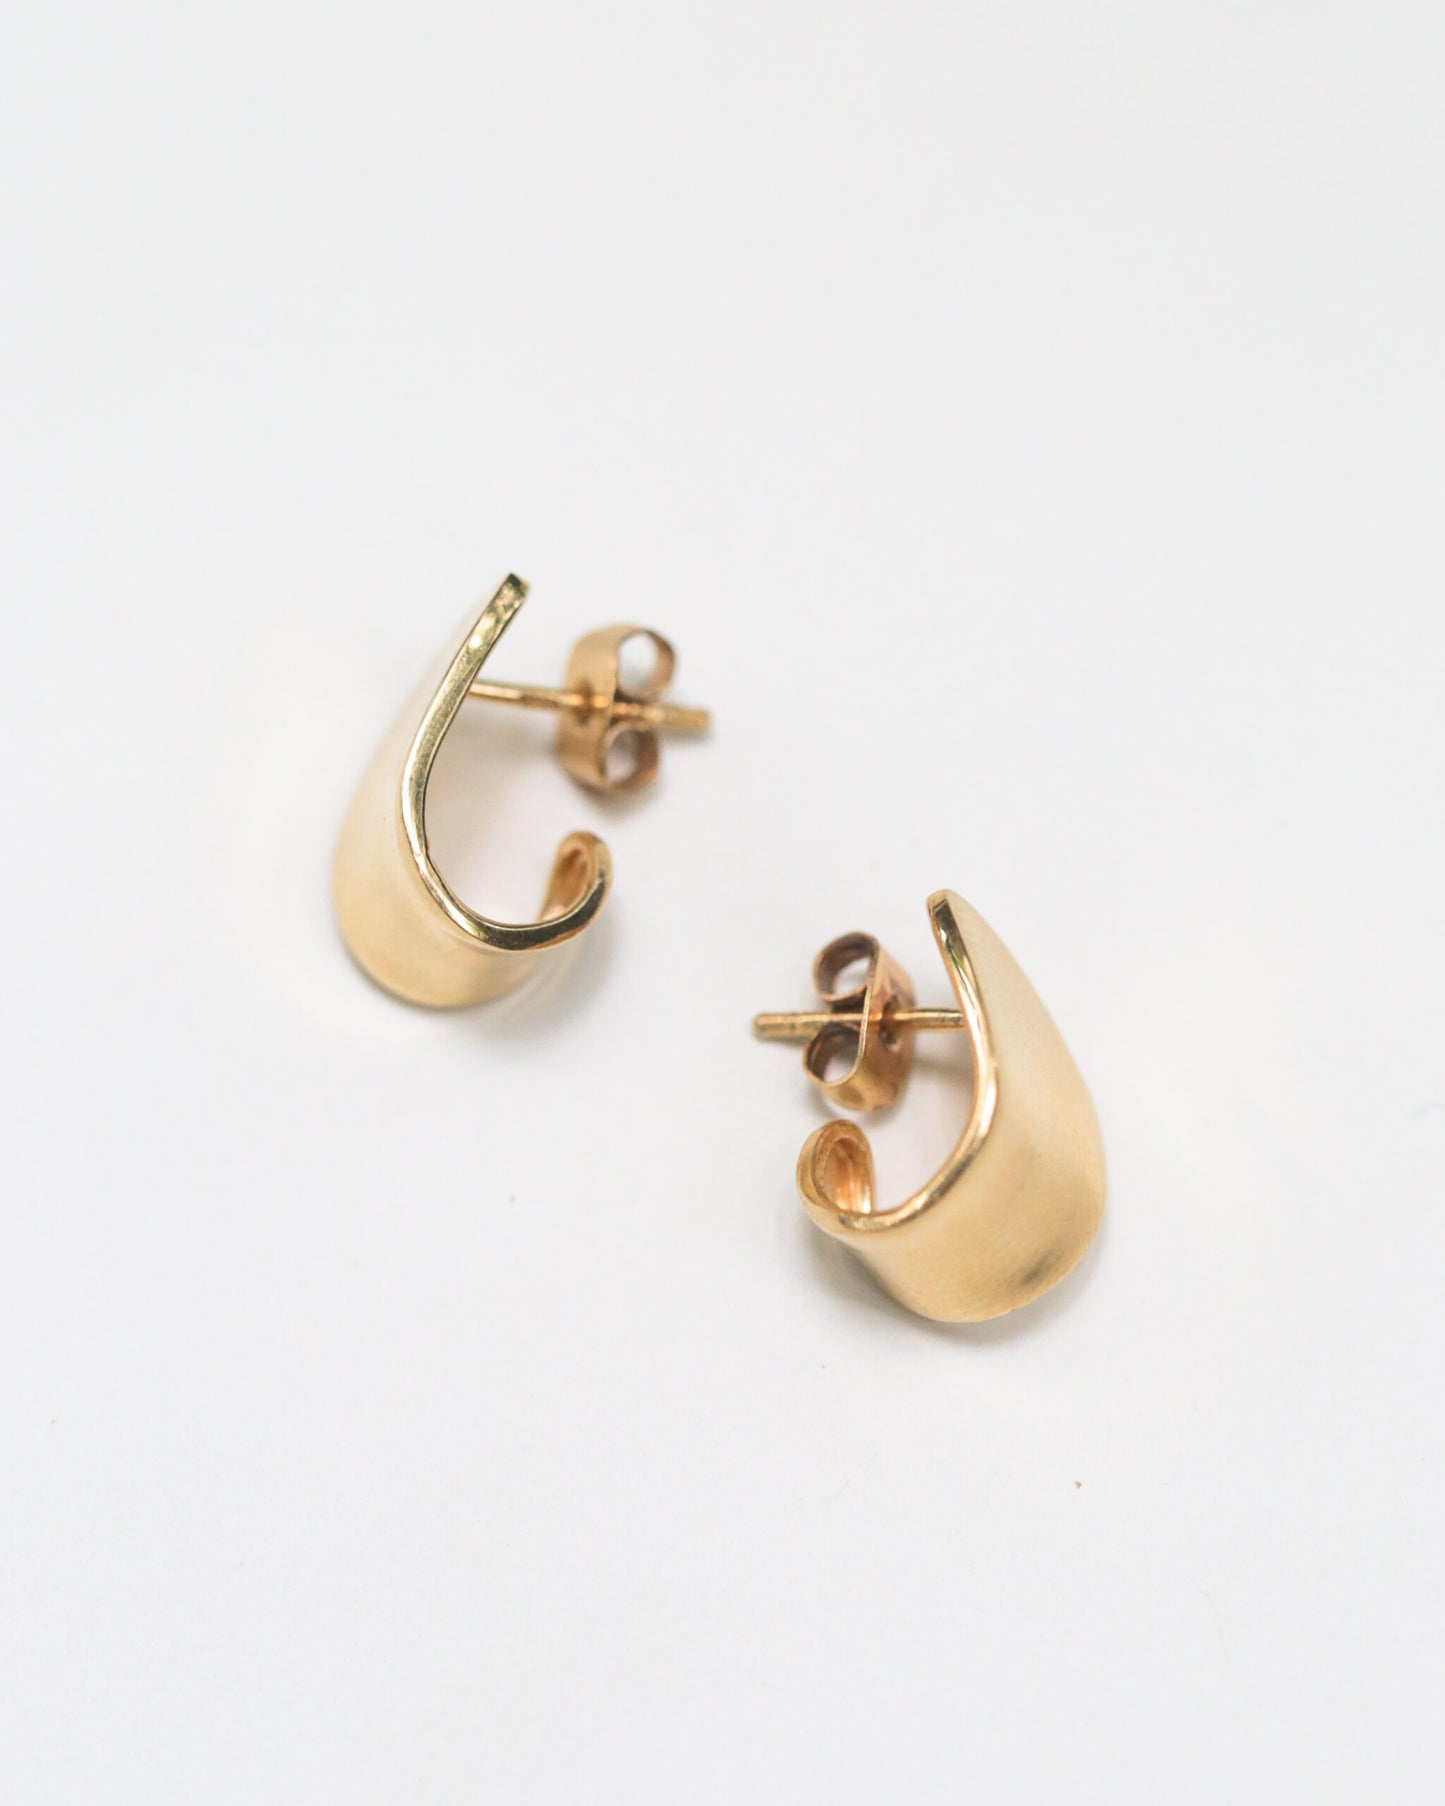 Pele - Earrings - Cuff Hoops Gold